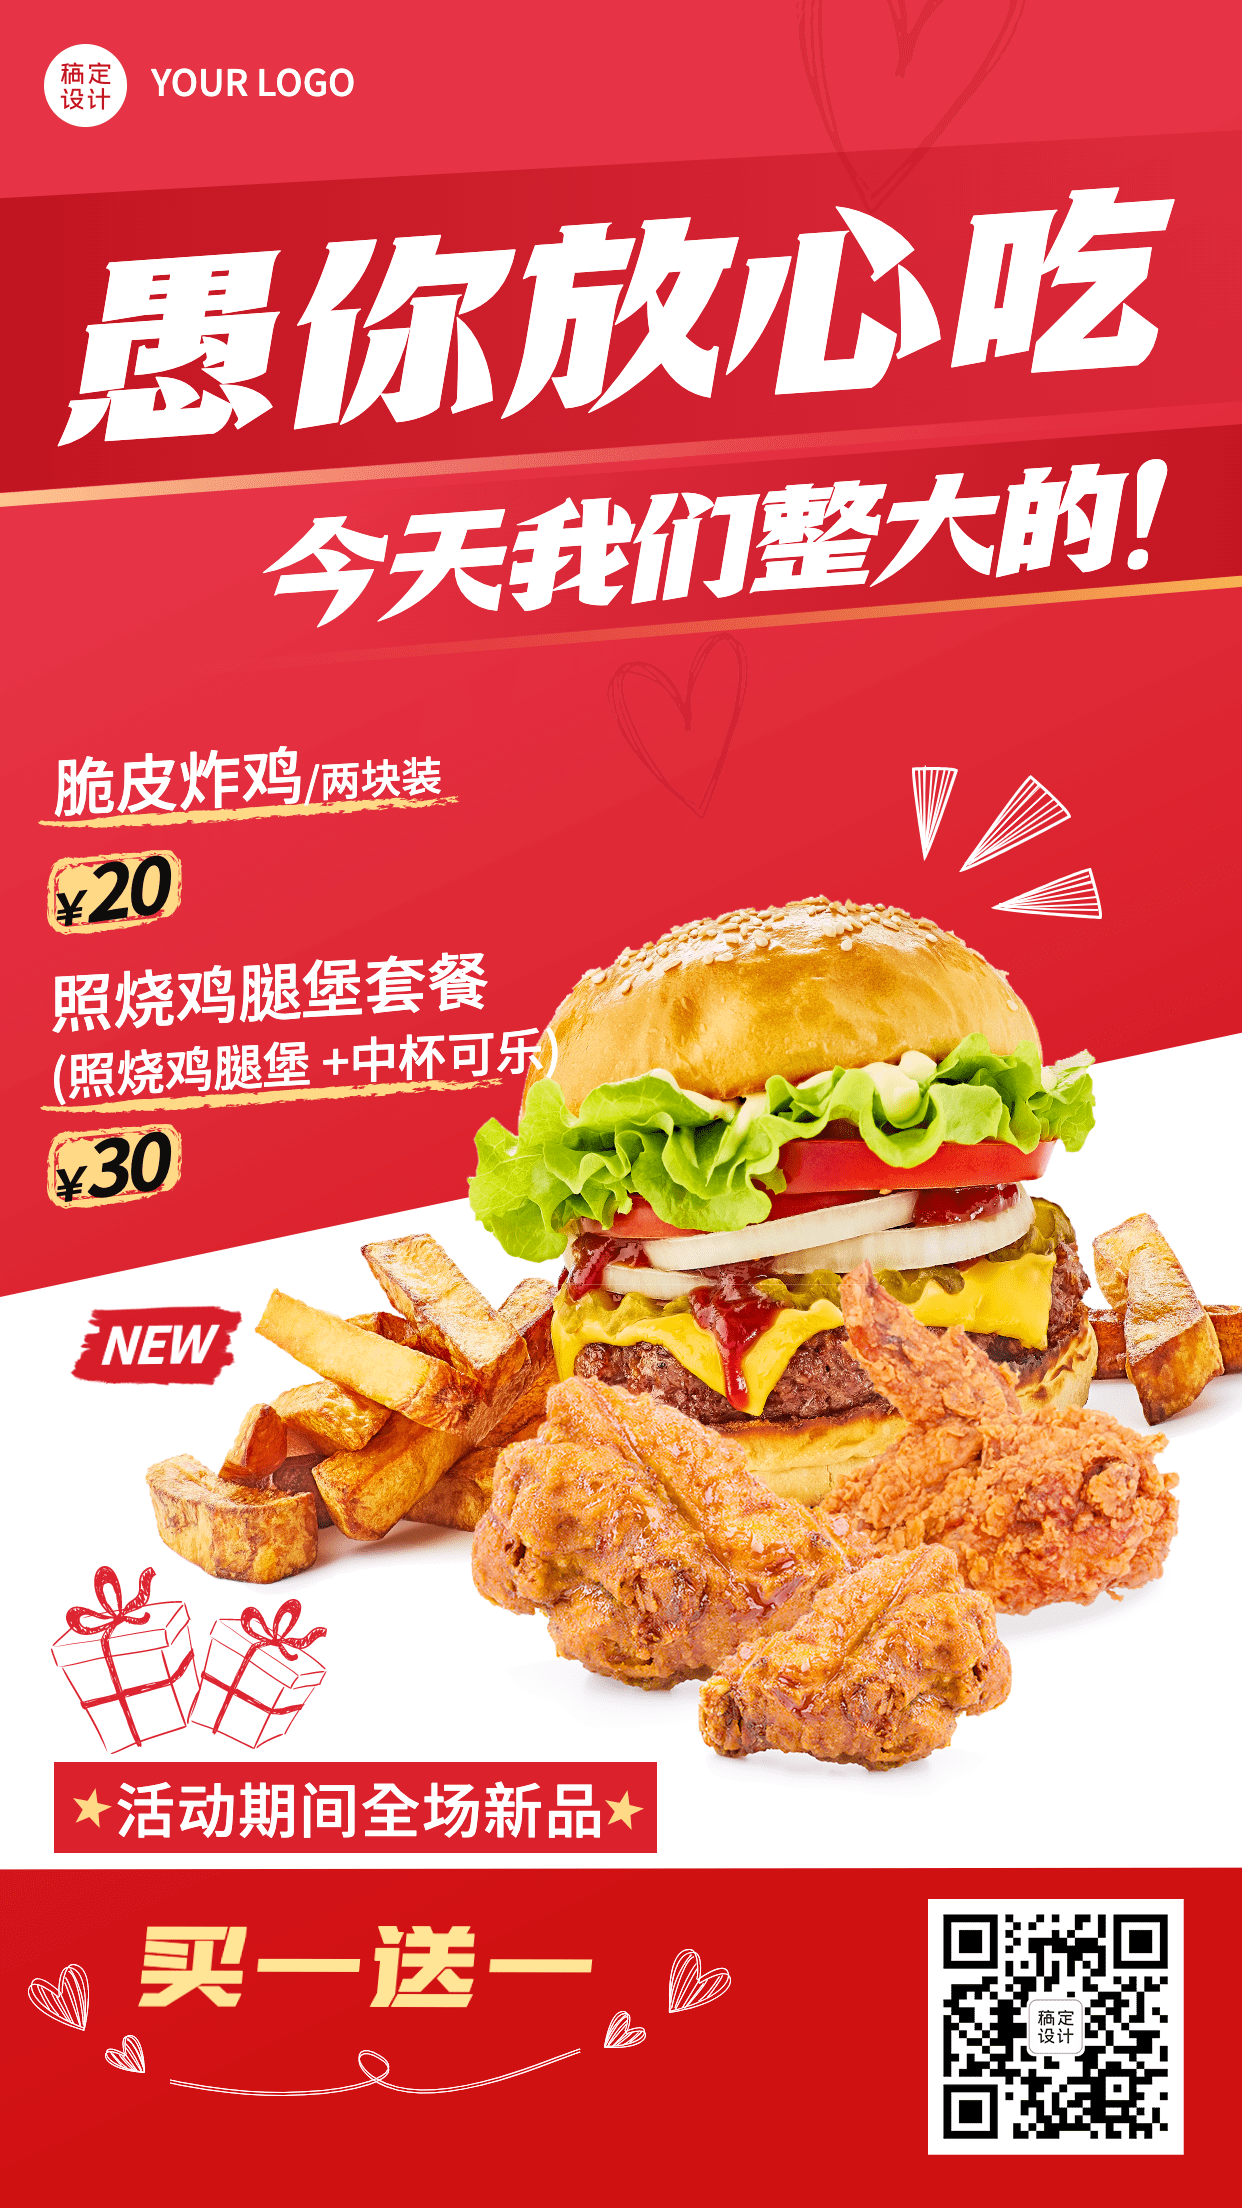 愚人节汉堡炸鸡营销餐饮手机海报预览效果